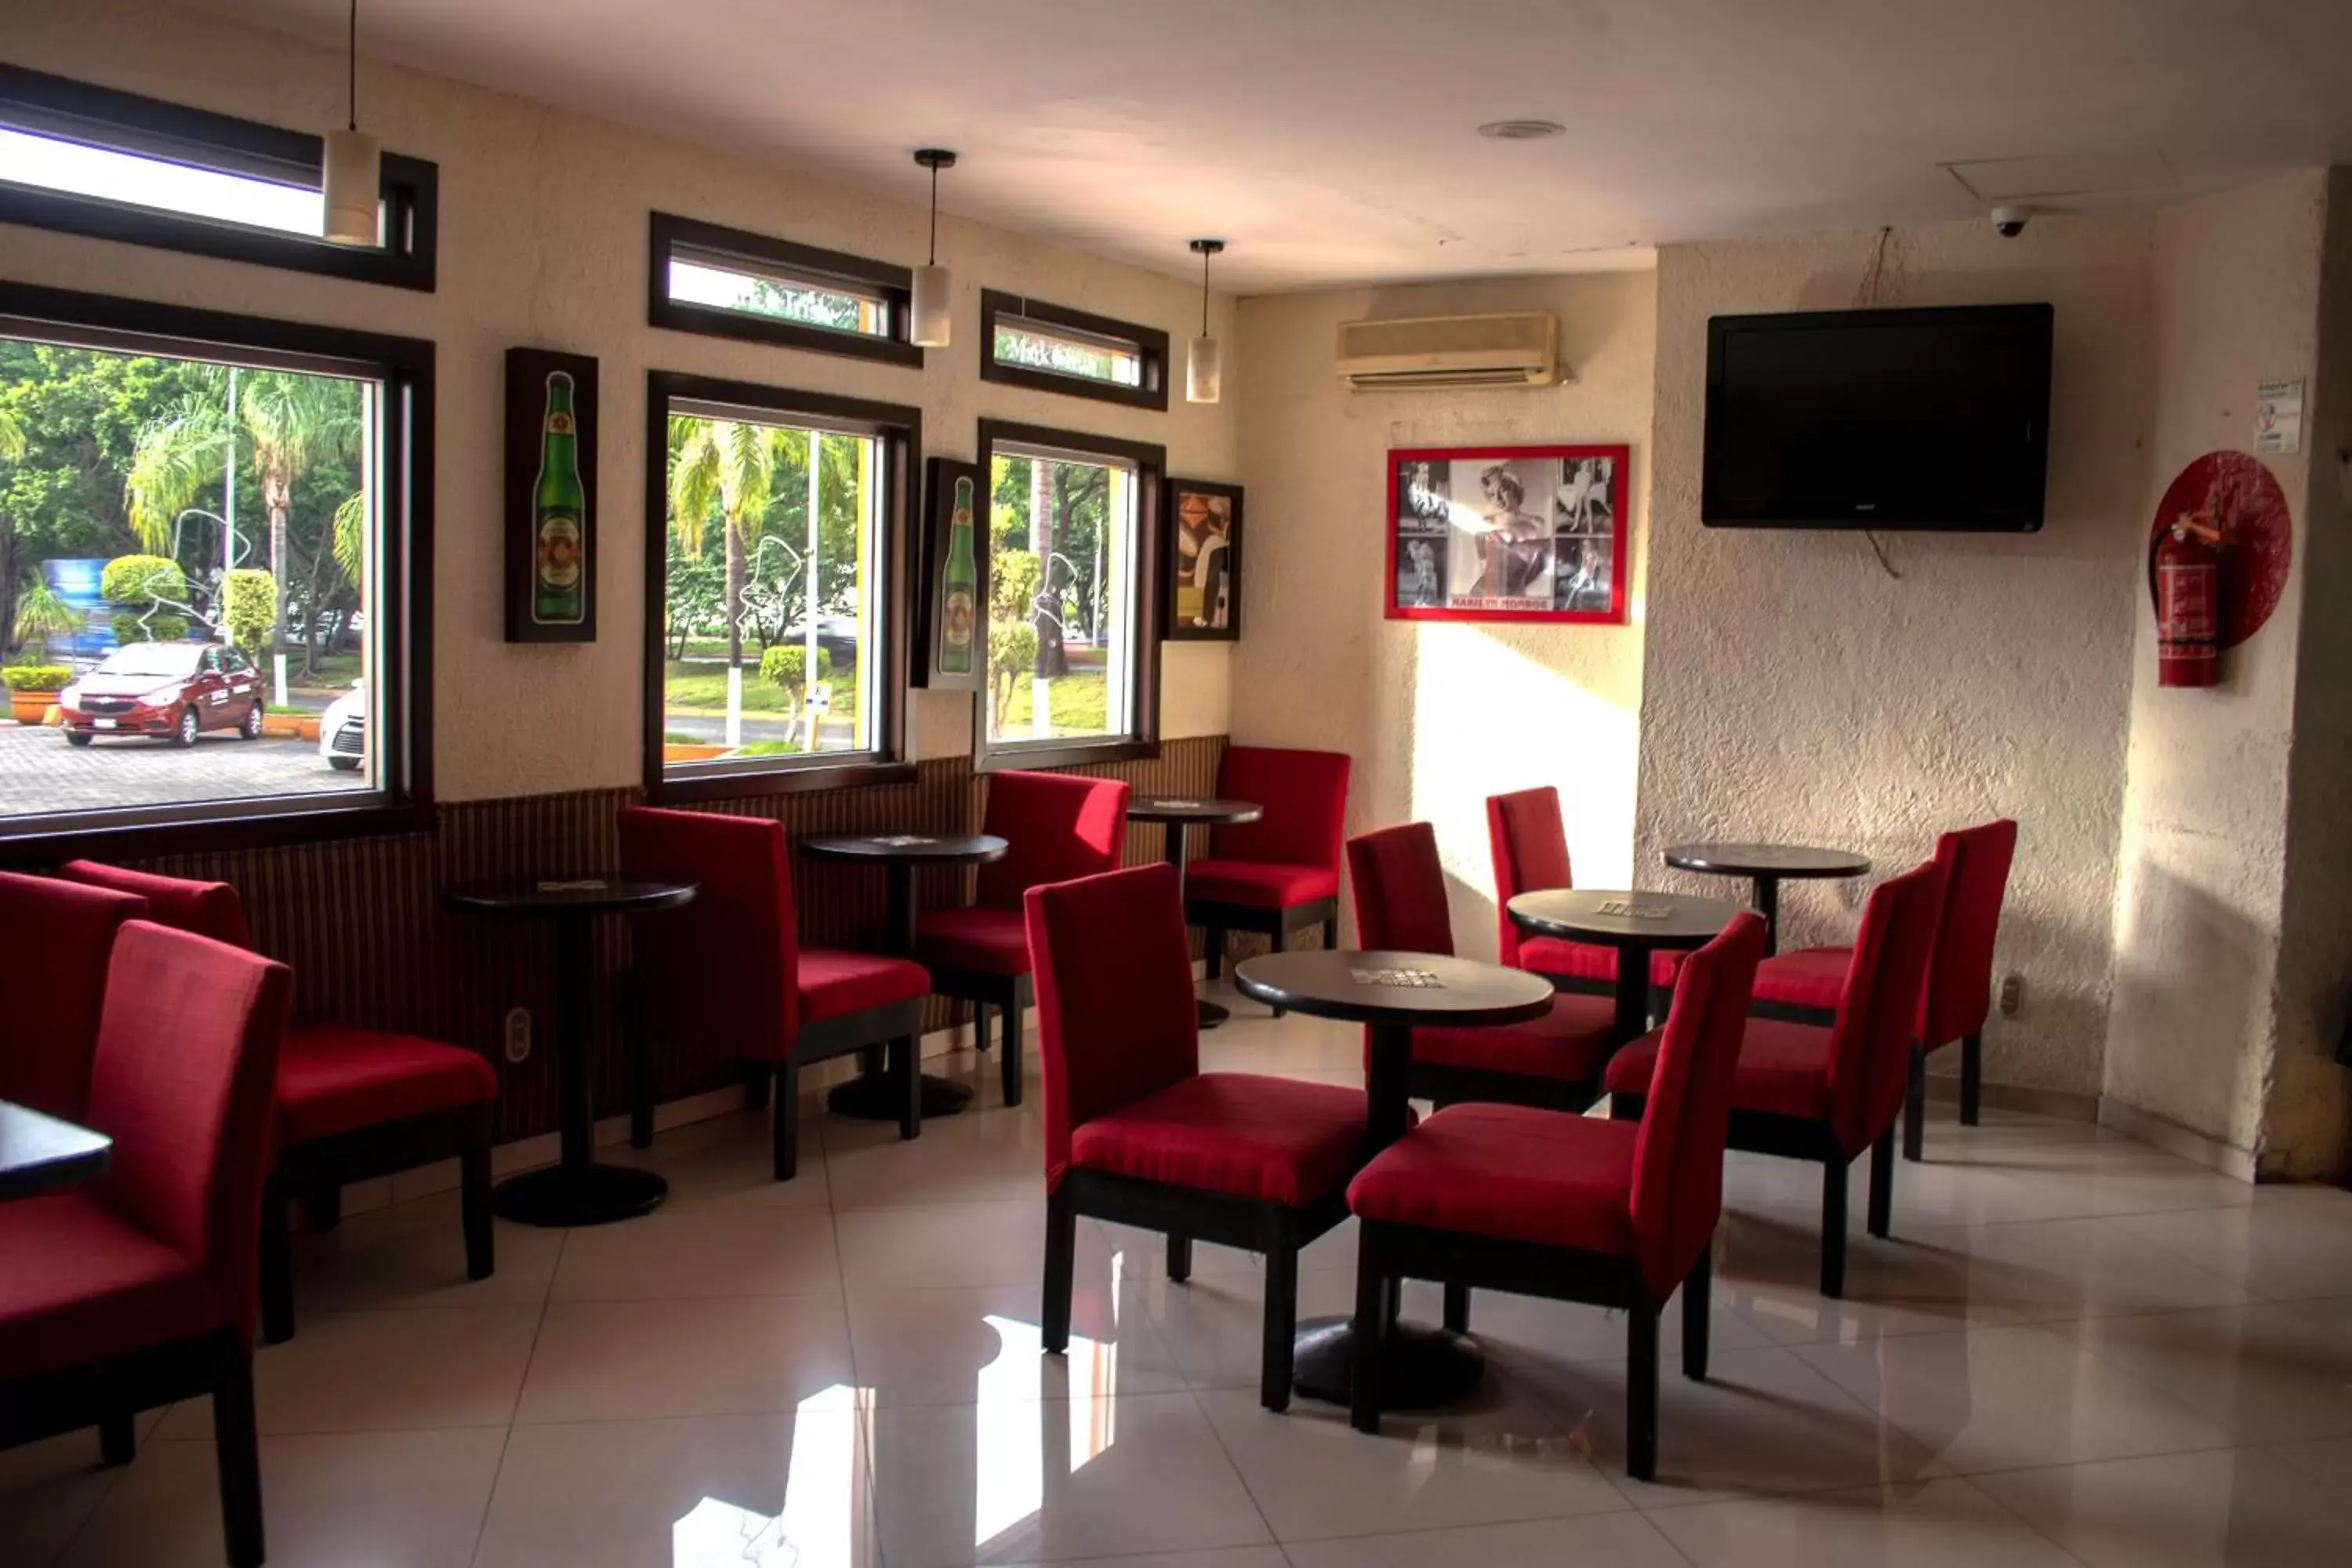 Restaurant/places to eat, Lounge/Bar in Hotel Santa Irene Guadalajara